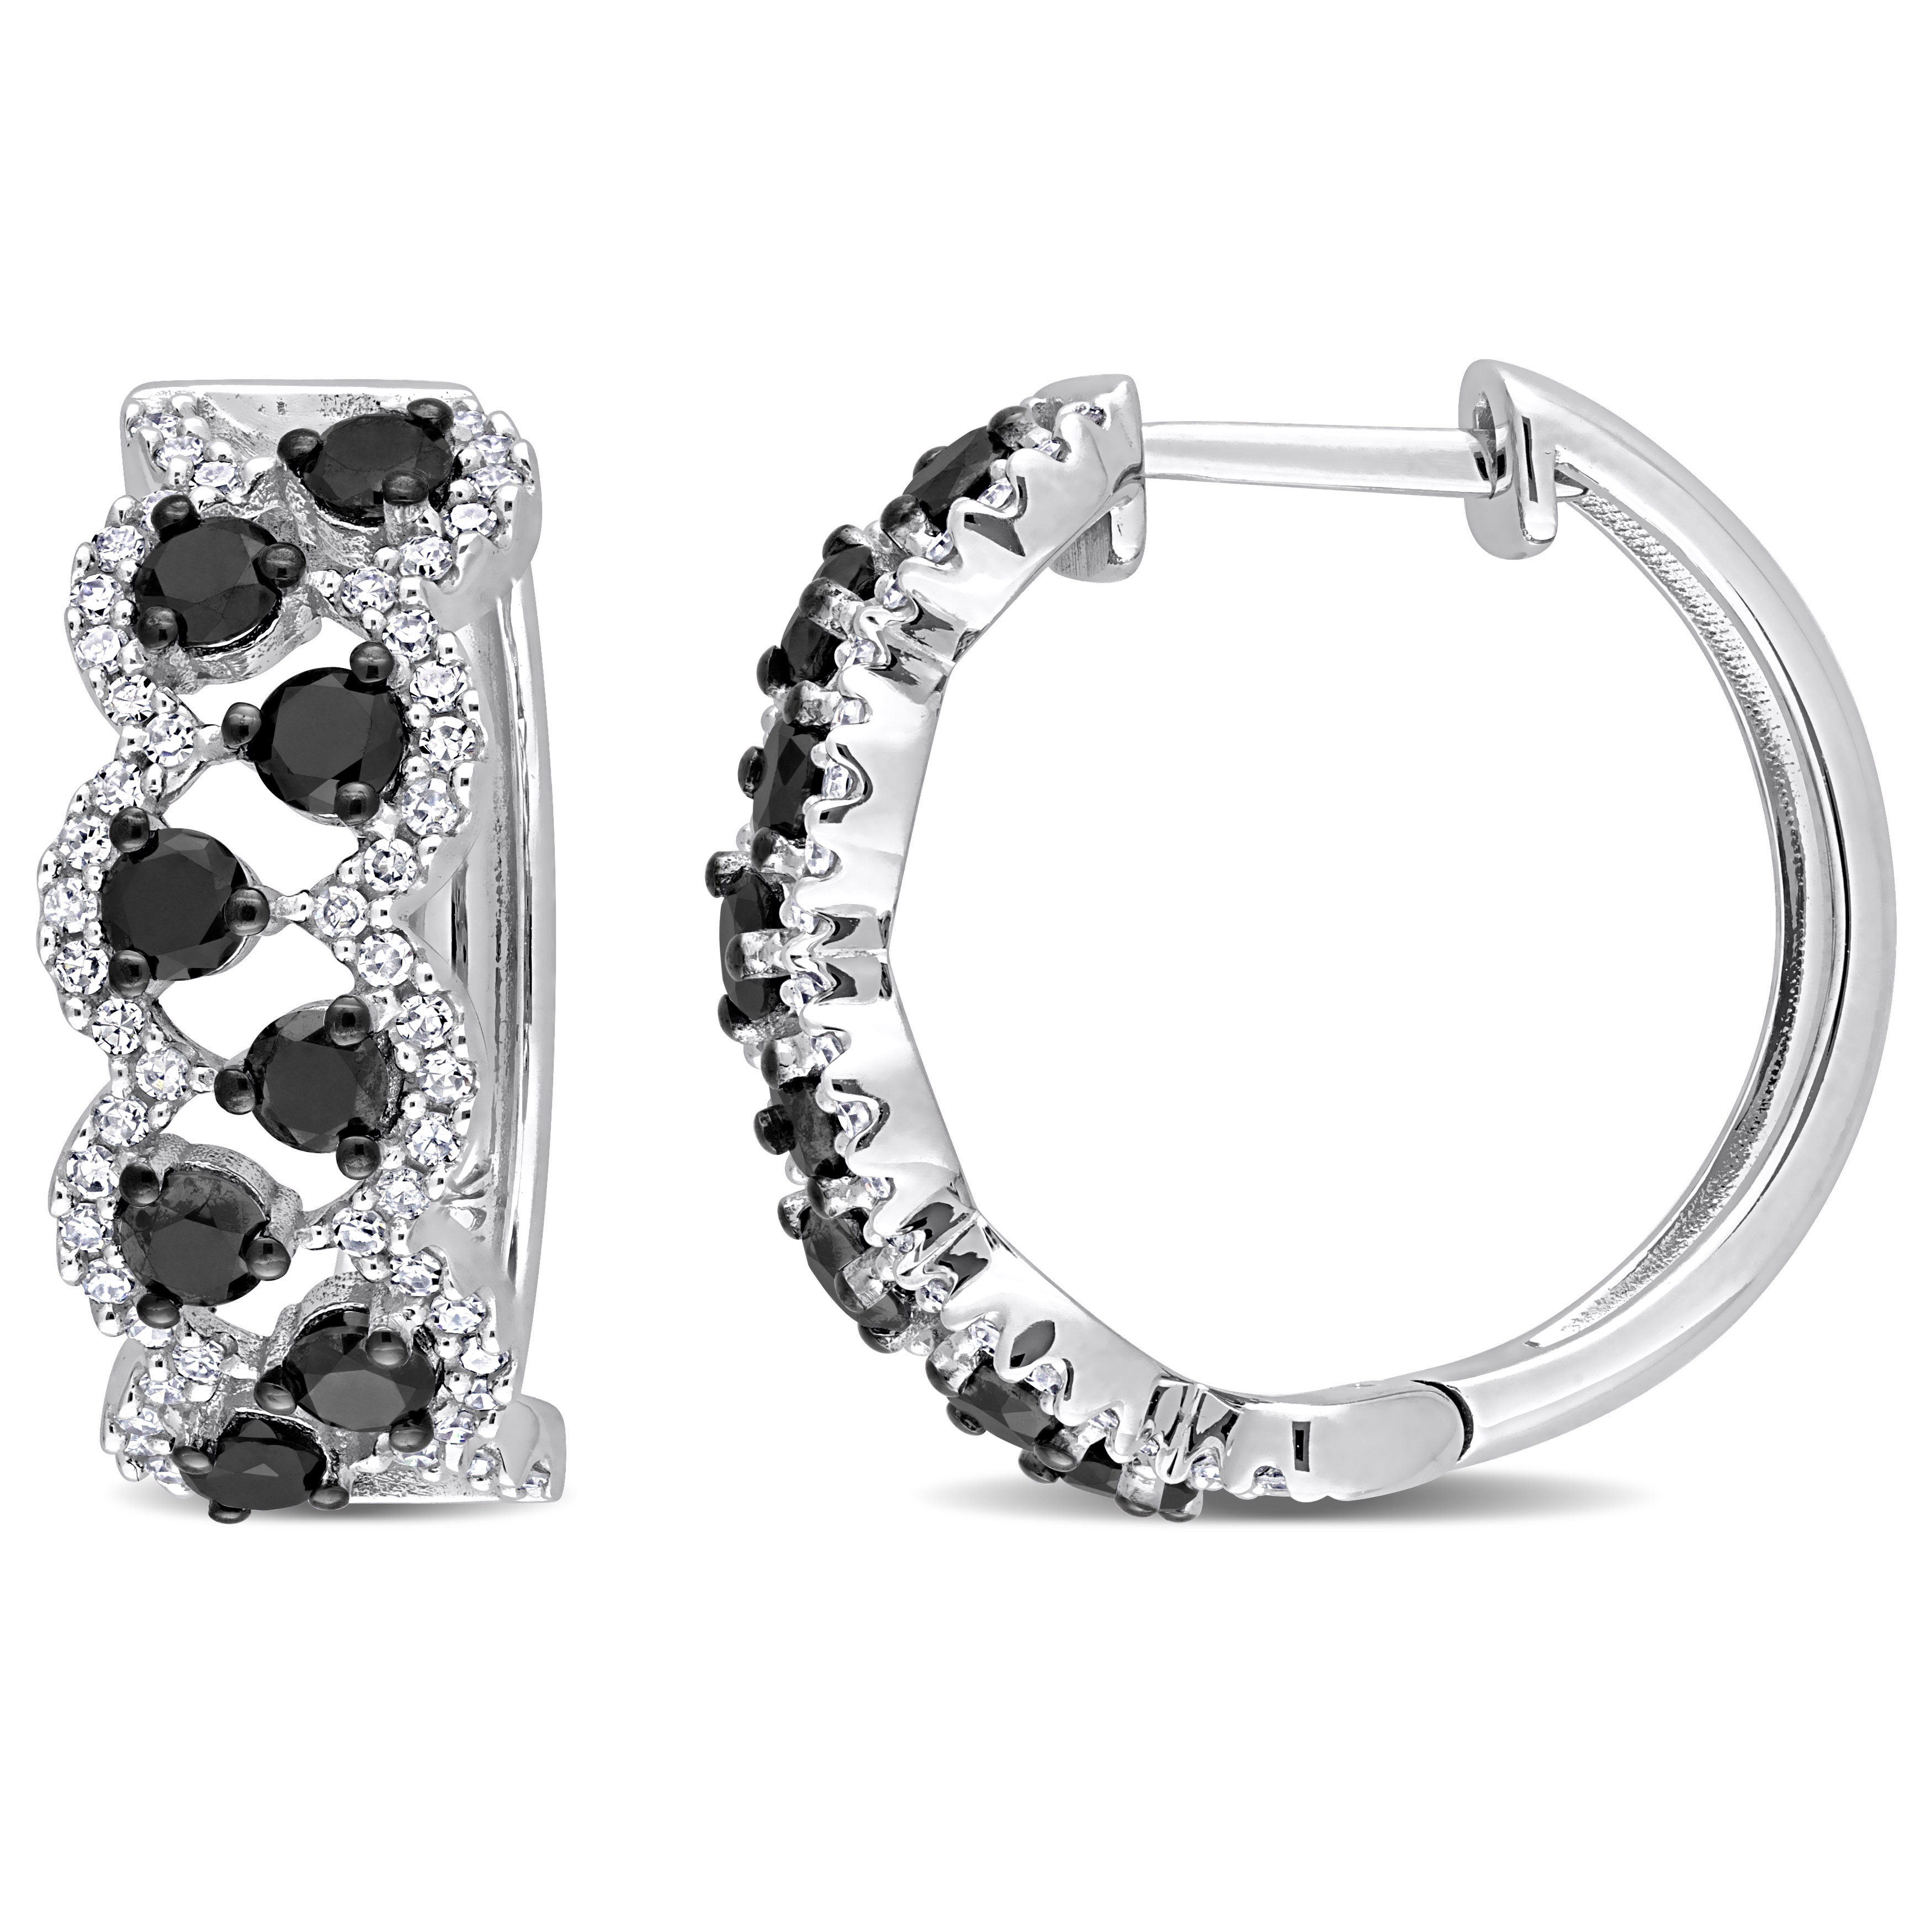 1 3/4 CT TDW Black and White Diamond Hoop Earrings in 10k White Gold